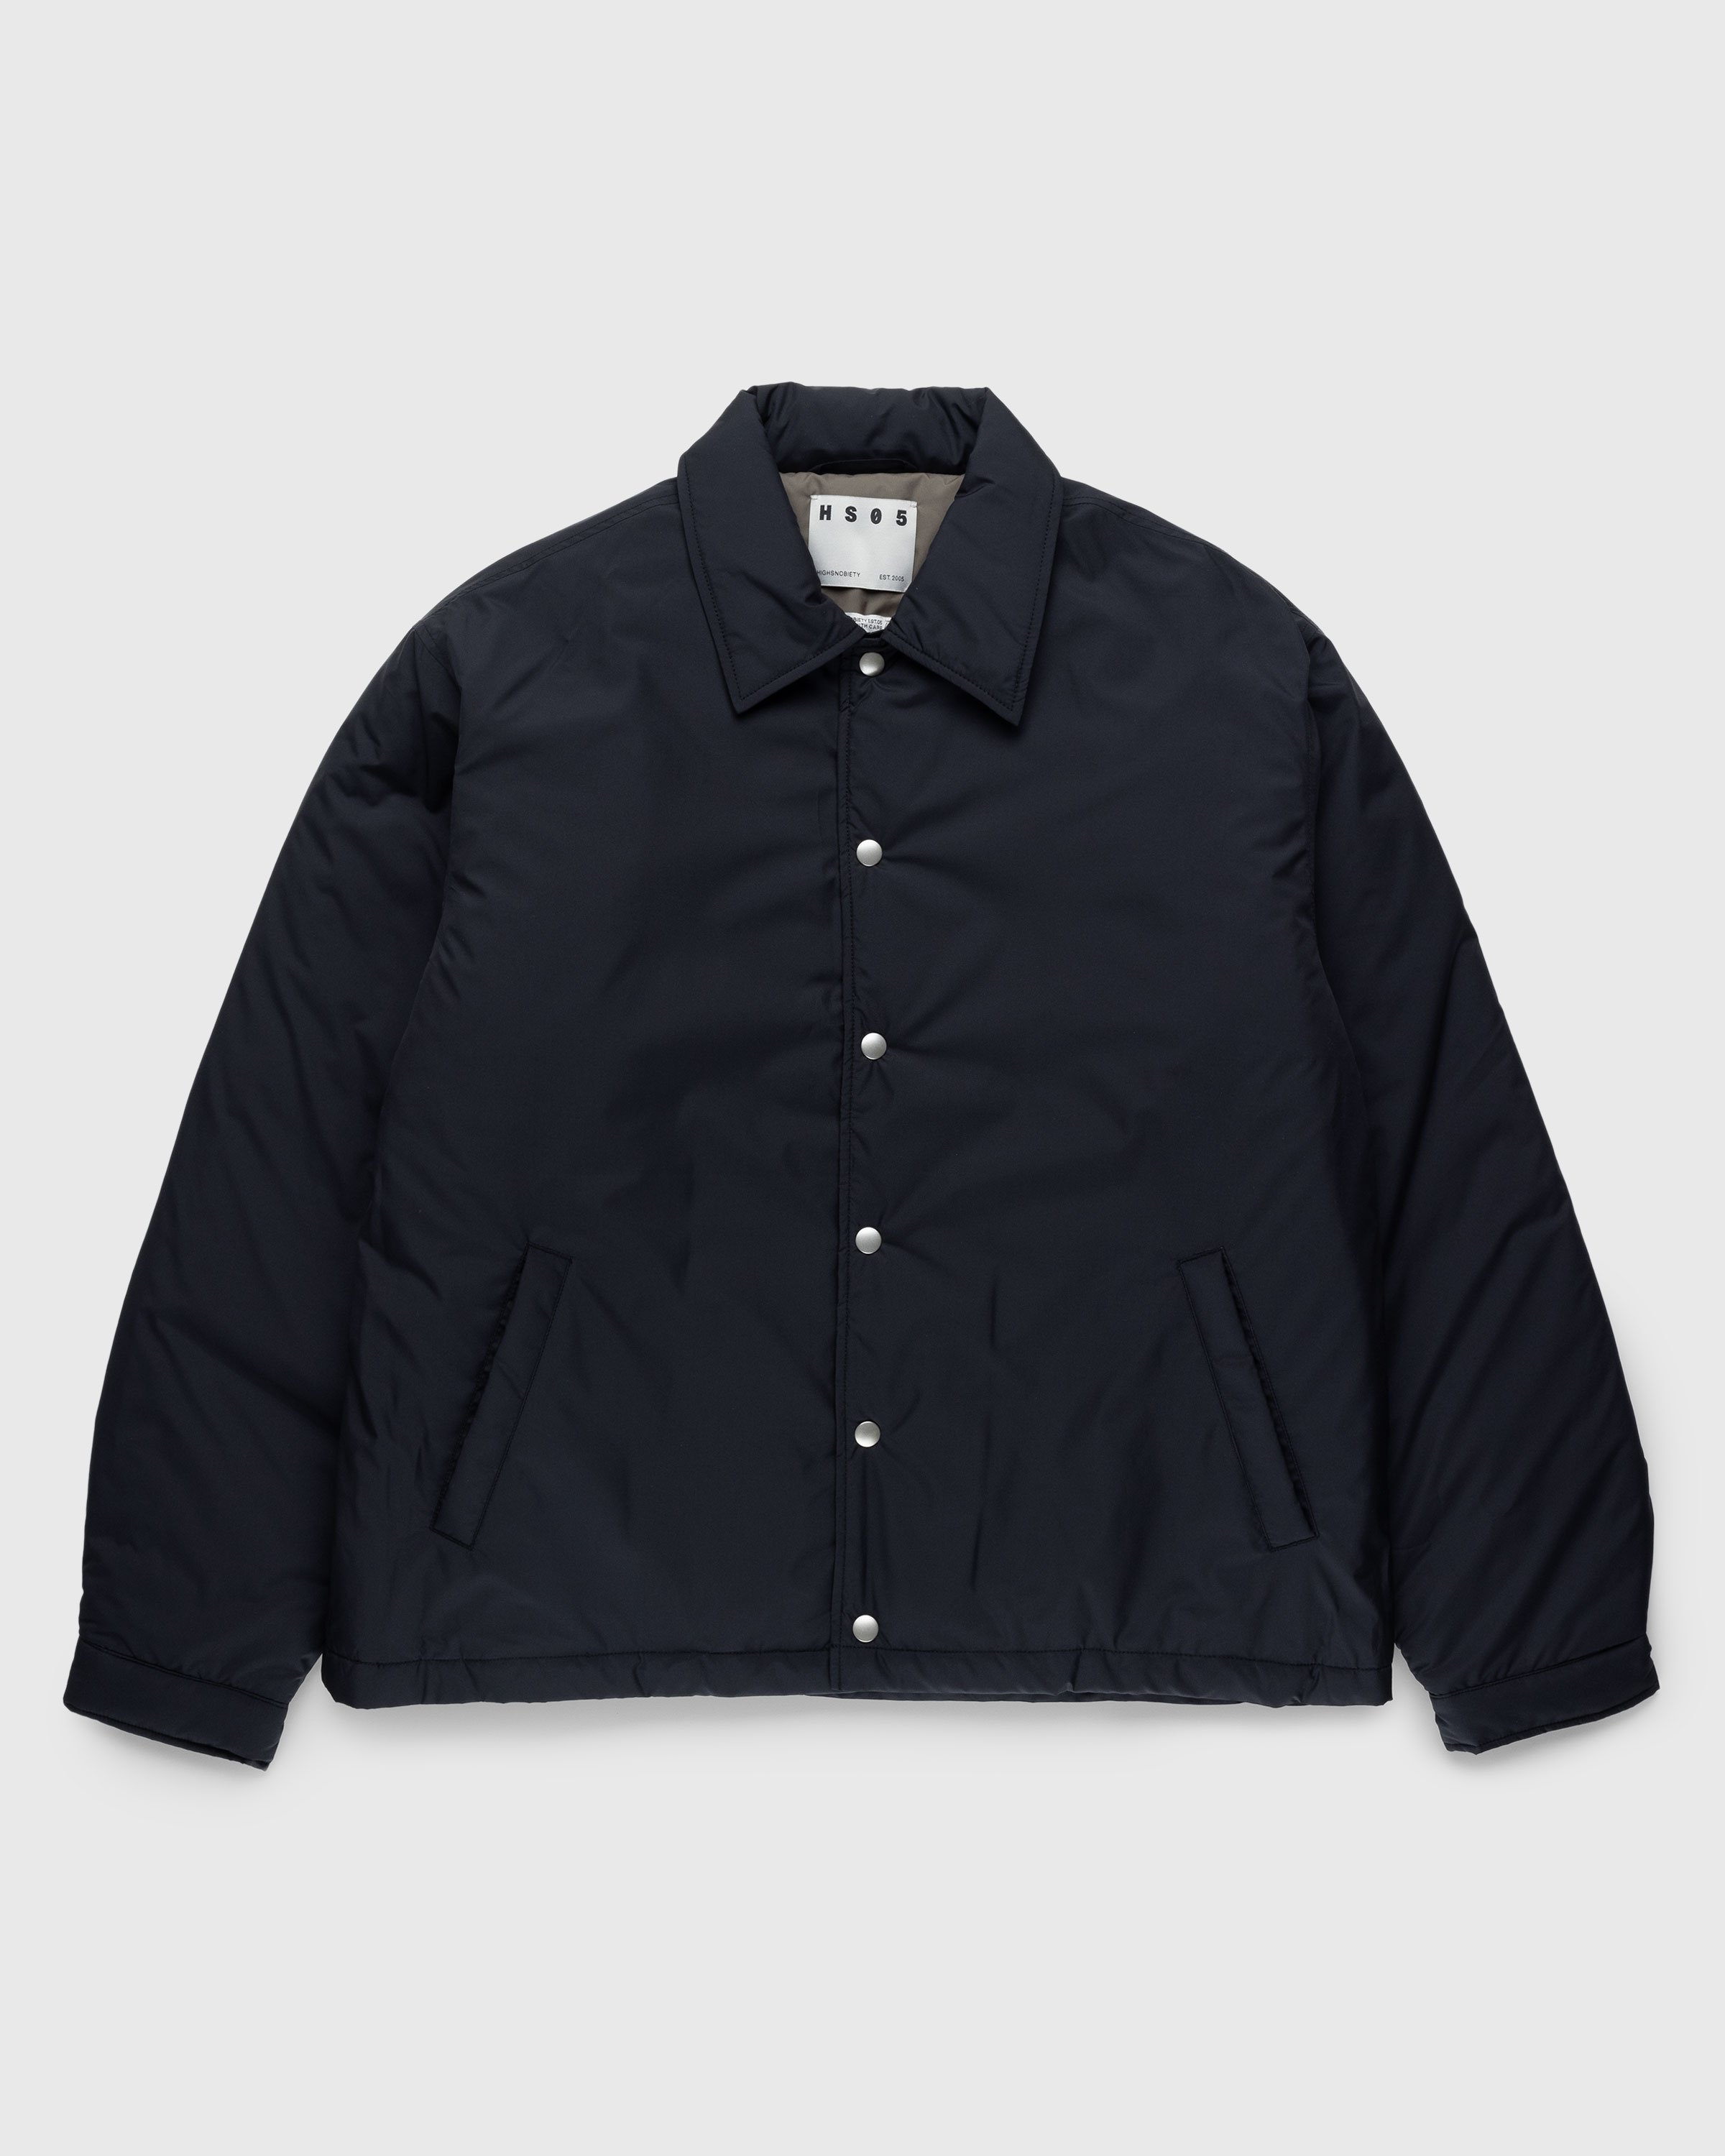 Highsnobiety HS05 - Light Insulated Eco-Poly Jacket Black - Clothing - Black - Image 1